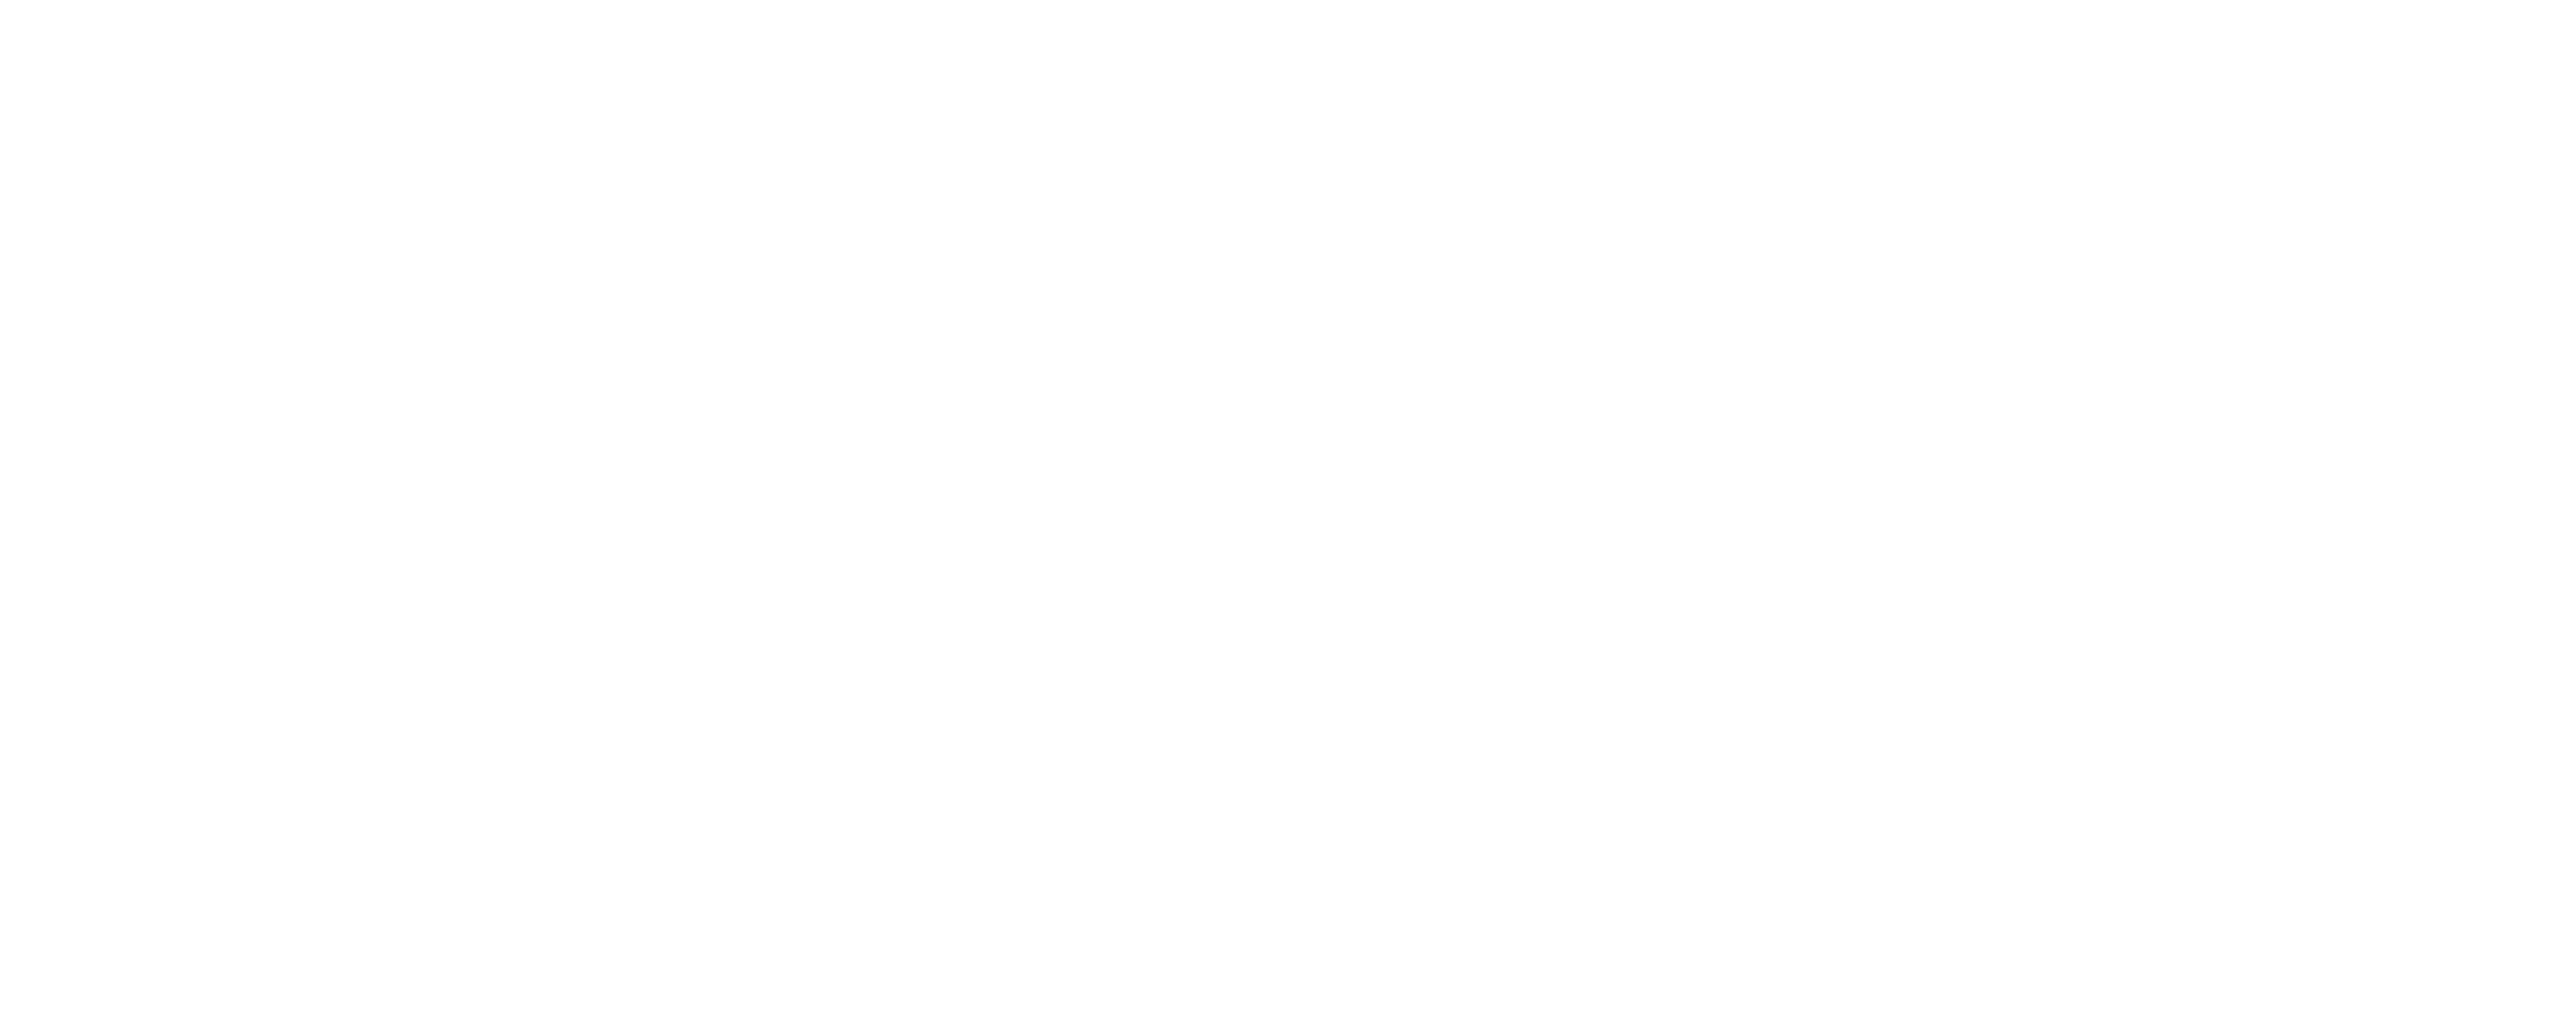 MTC Cappellini